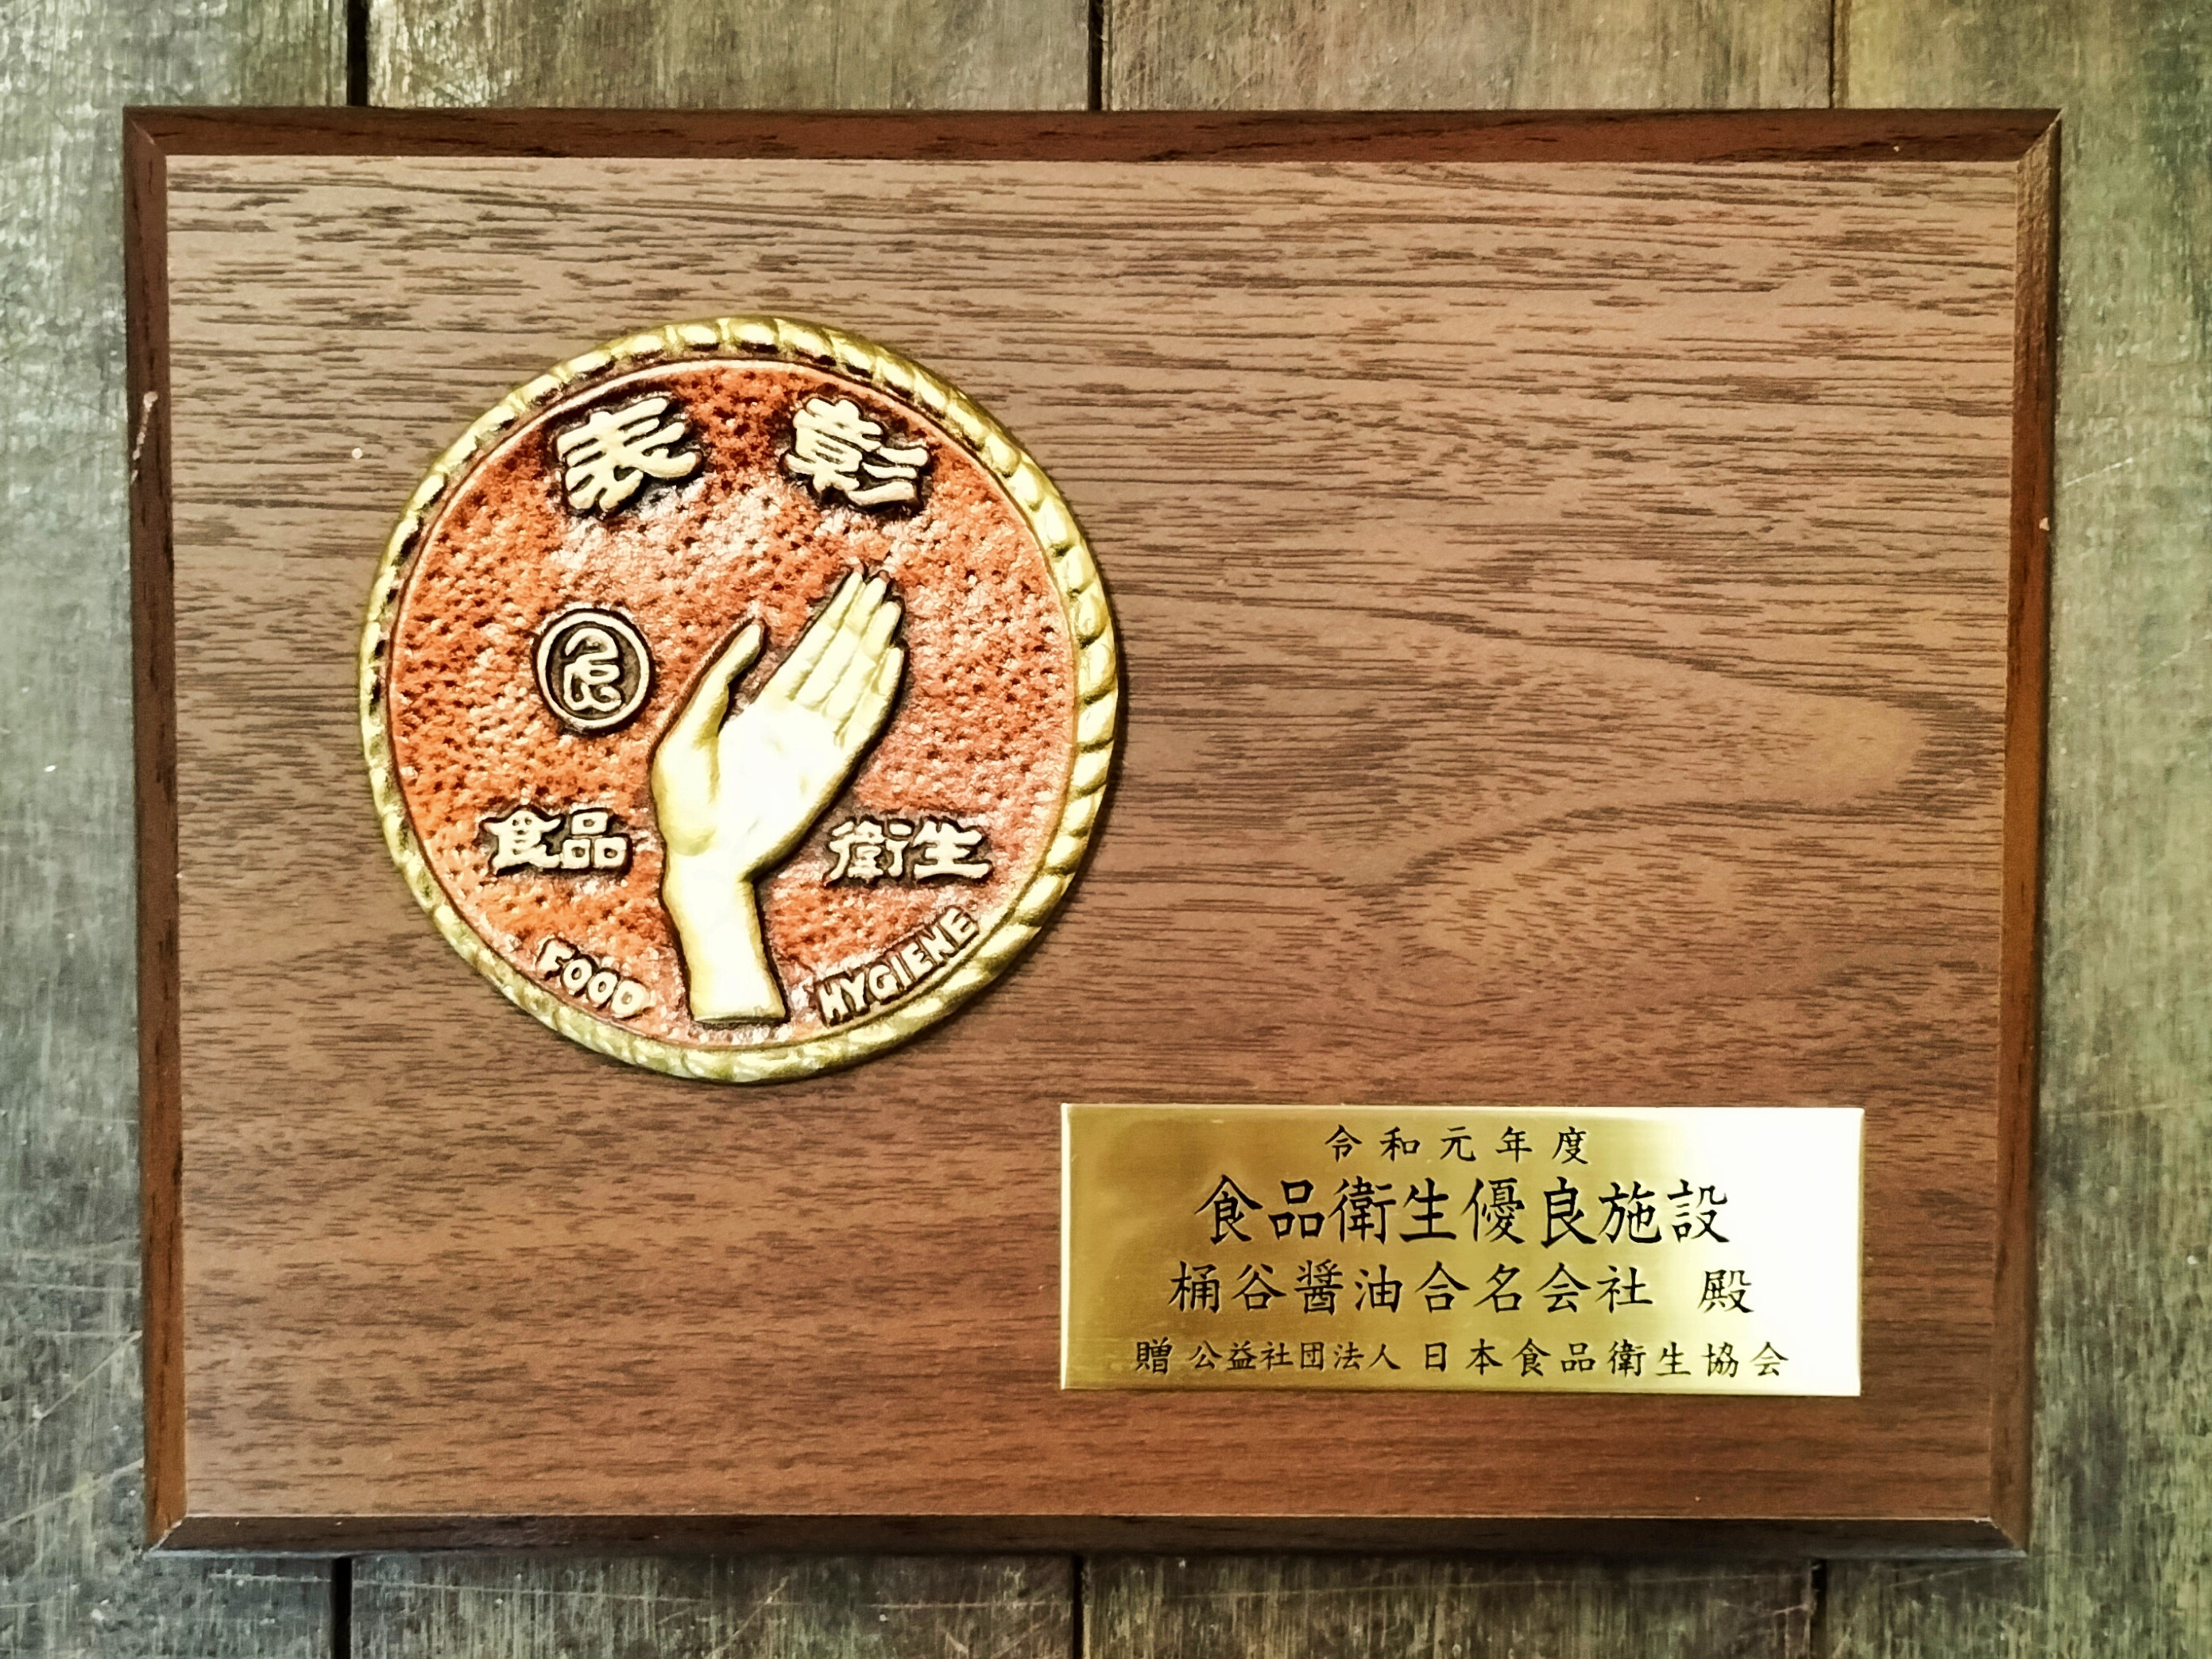 「日本食品衛生協会会長賞」の盾をいただきました！